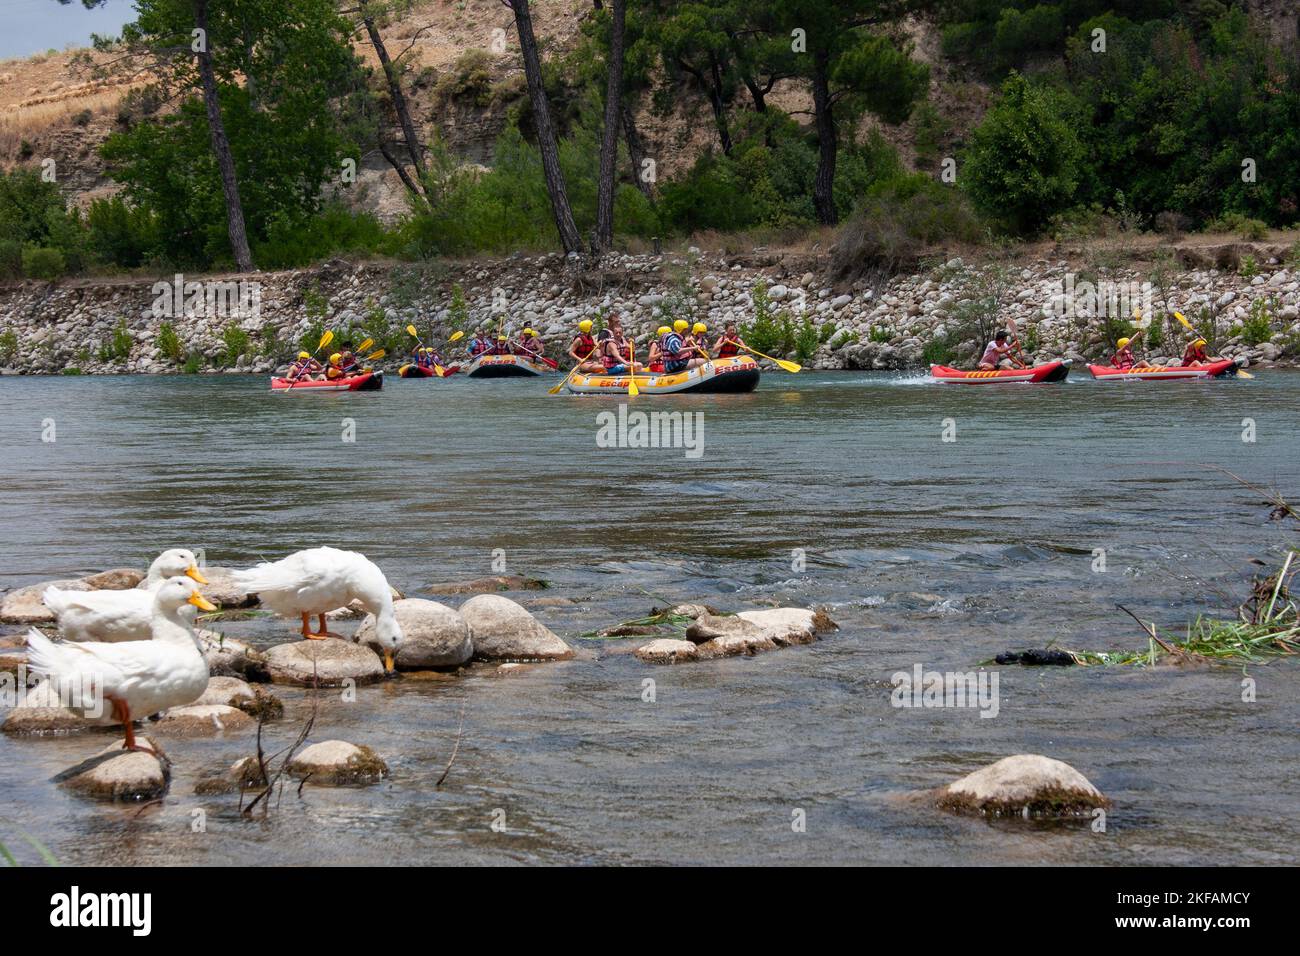 Un groupe de touristes rafting sur une rivière dans les montagnes du Taurus, Golfe d'Antalya. Péninsule anatolienne, Anatolie, Turquie Banque D'Images